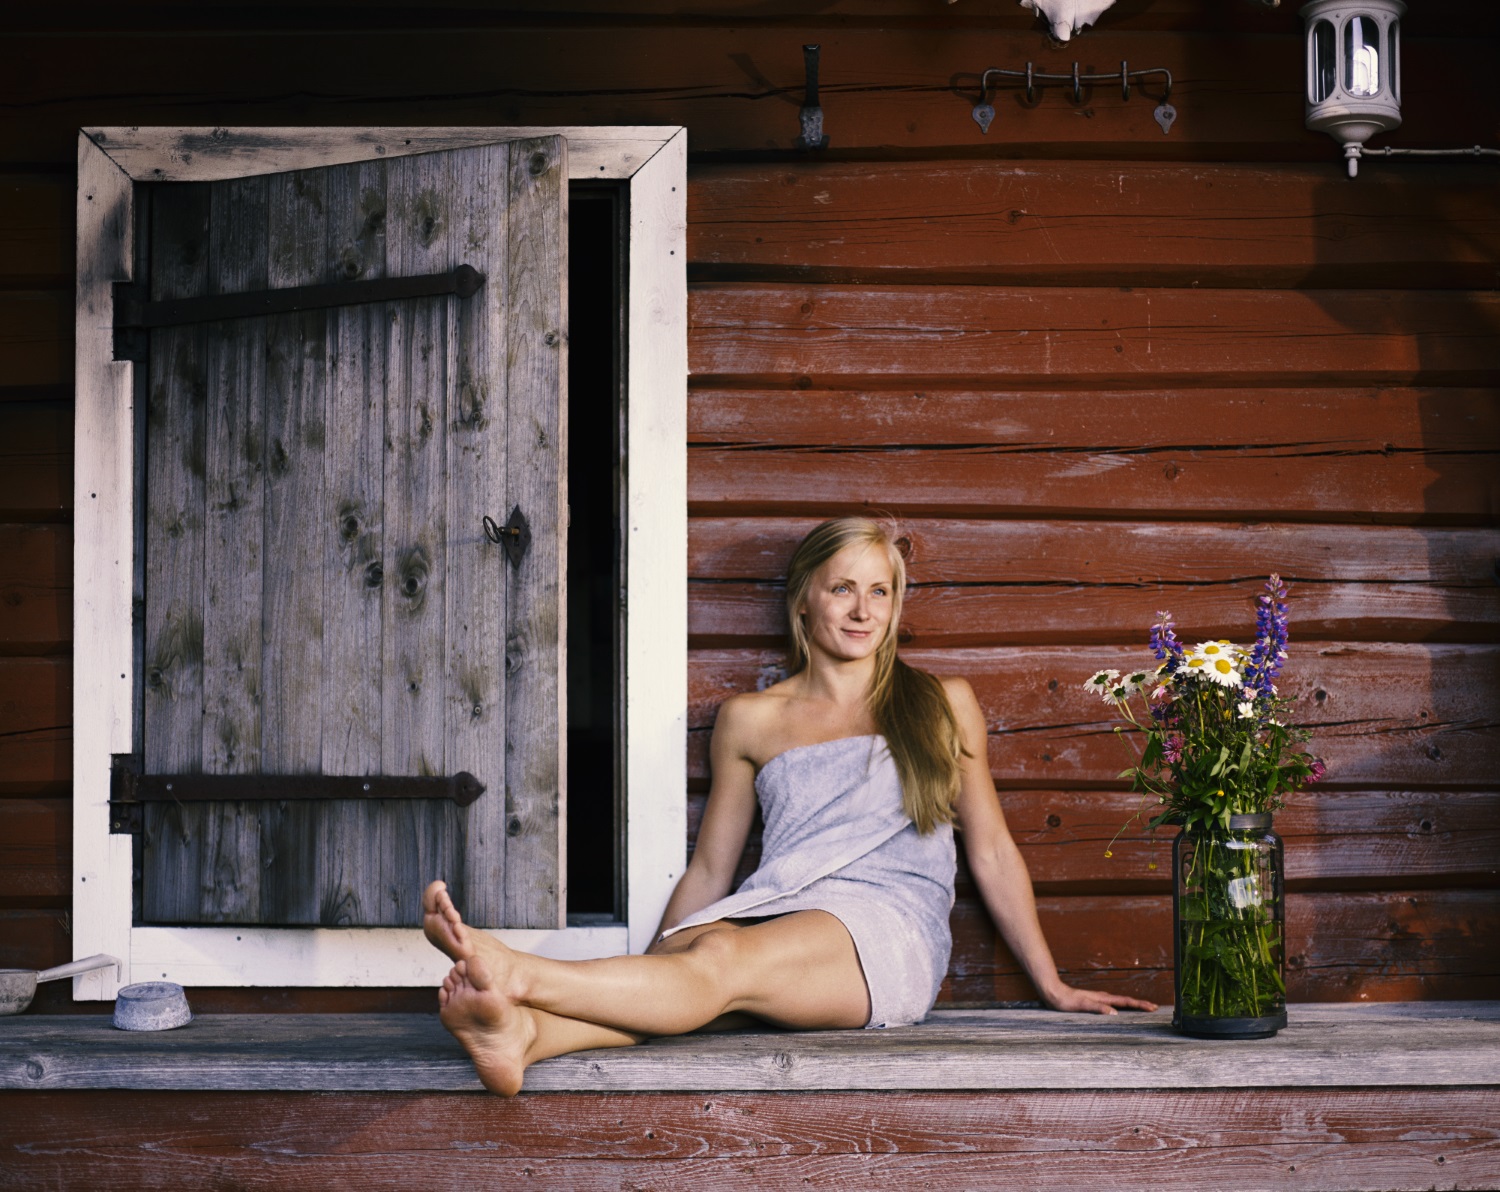 Finnish sauna tips Mikkeli Savonlinna